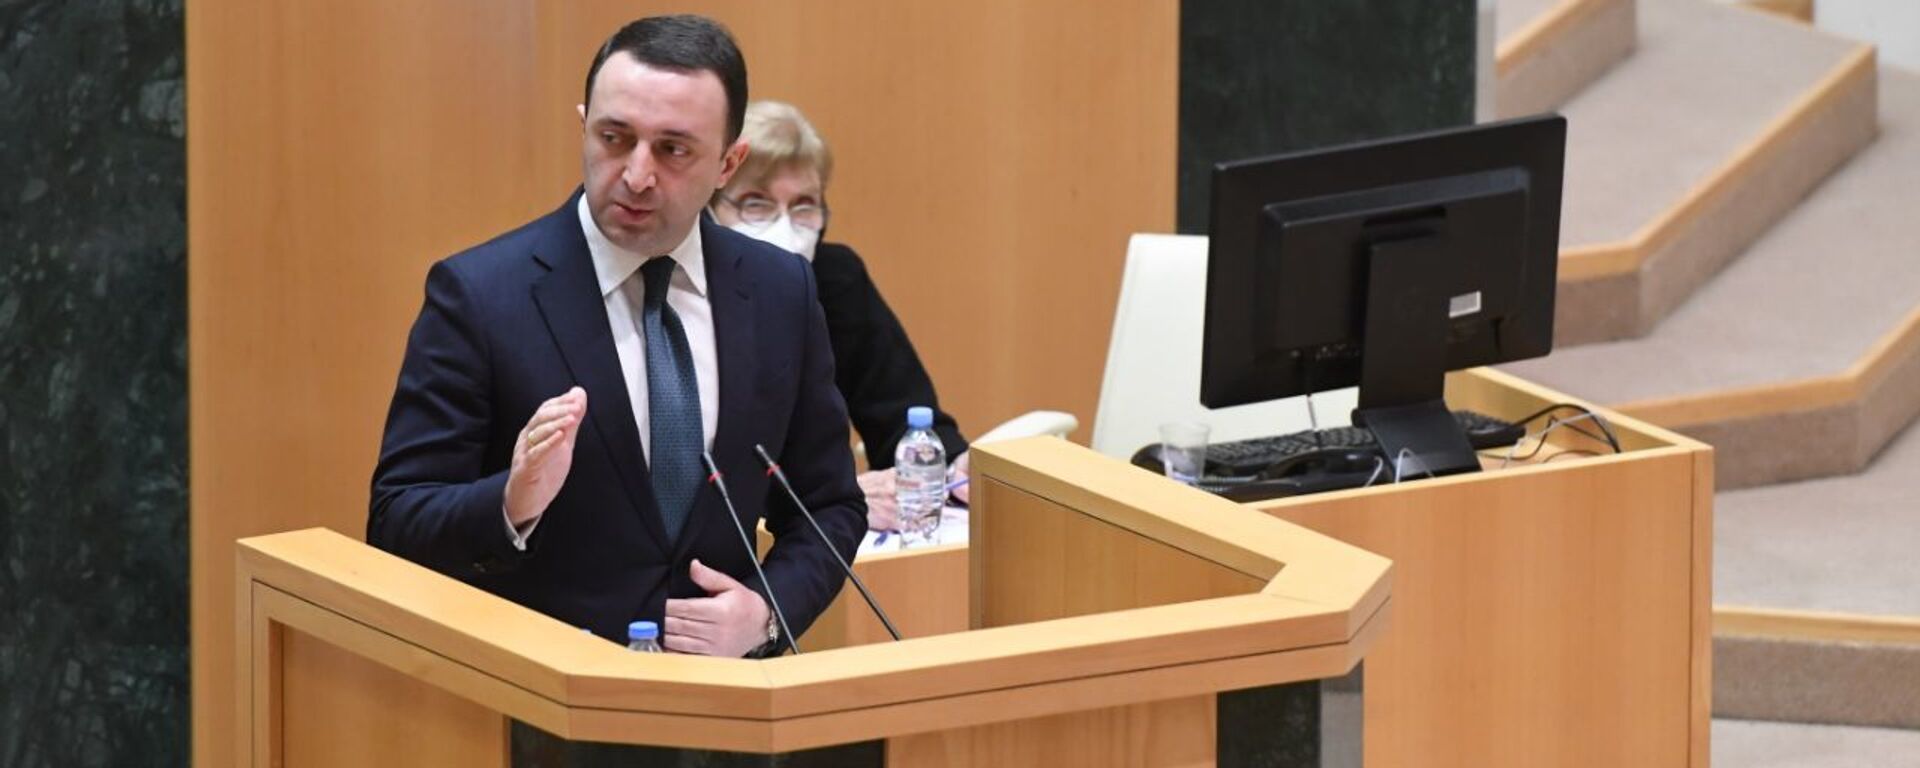 Ираклий Гарибашвили выступает перед парламентом Грузии 22 февраля 2021 года - Sputnik Грузия, 1920, 22.02.2021